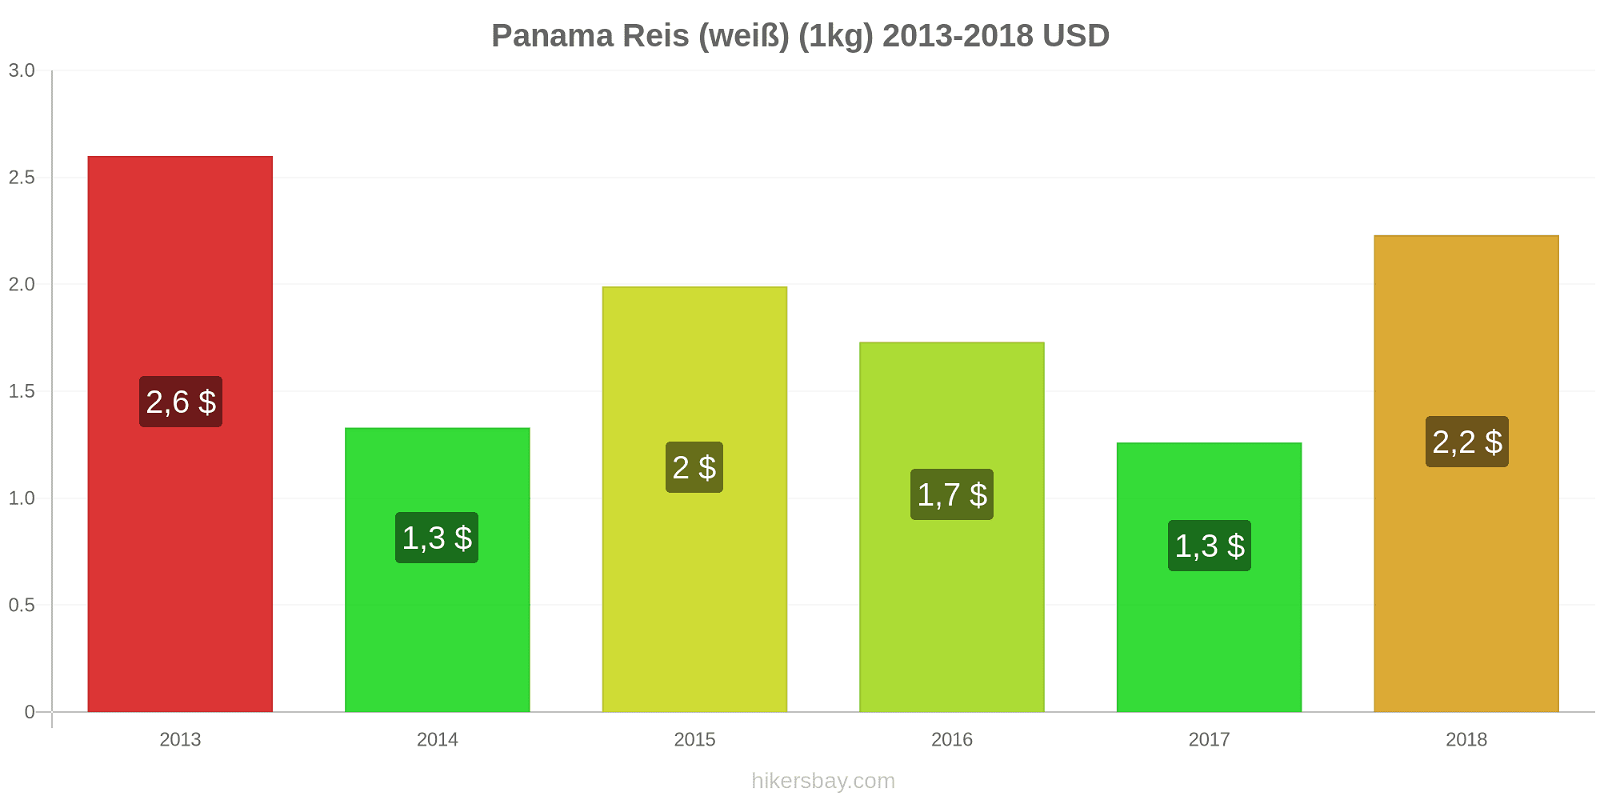 Panama Preisänderungen Reis (weiß) (1kg) hikersbay.com